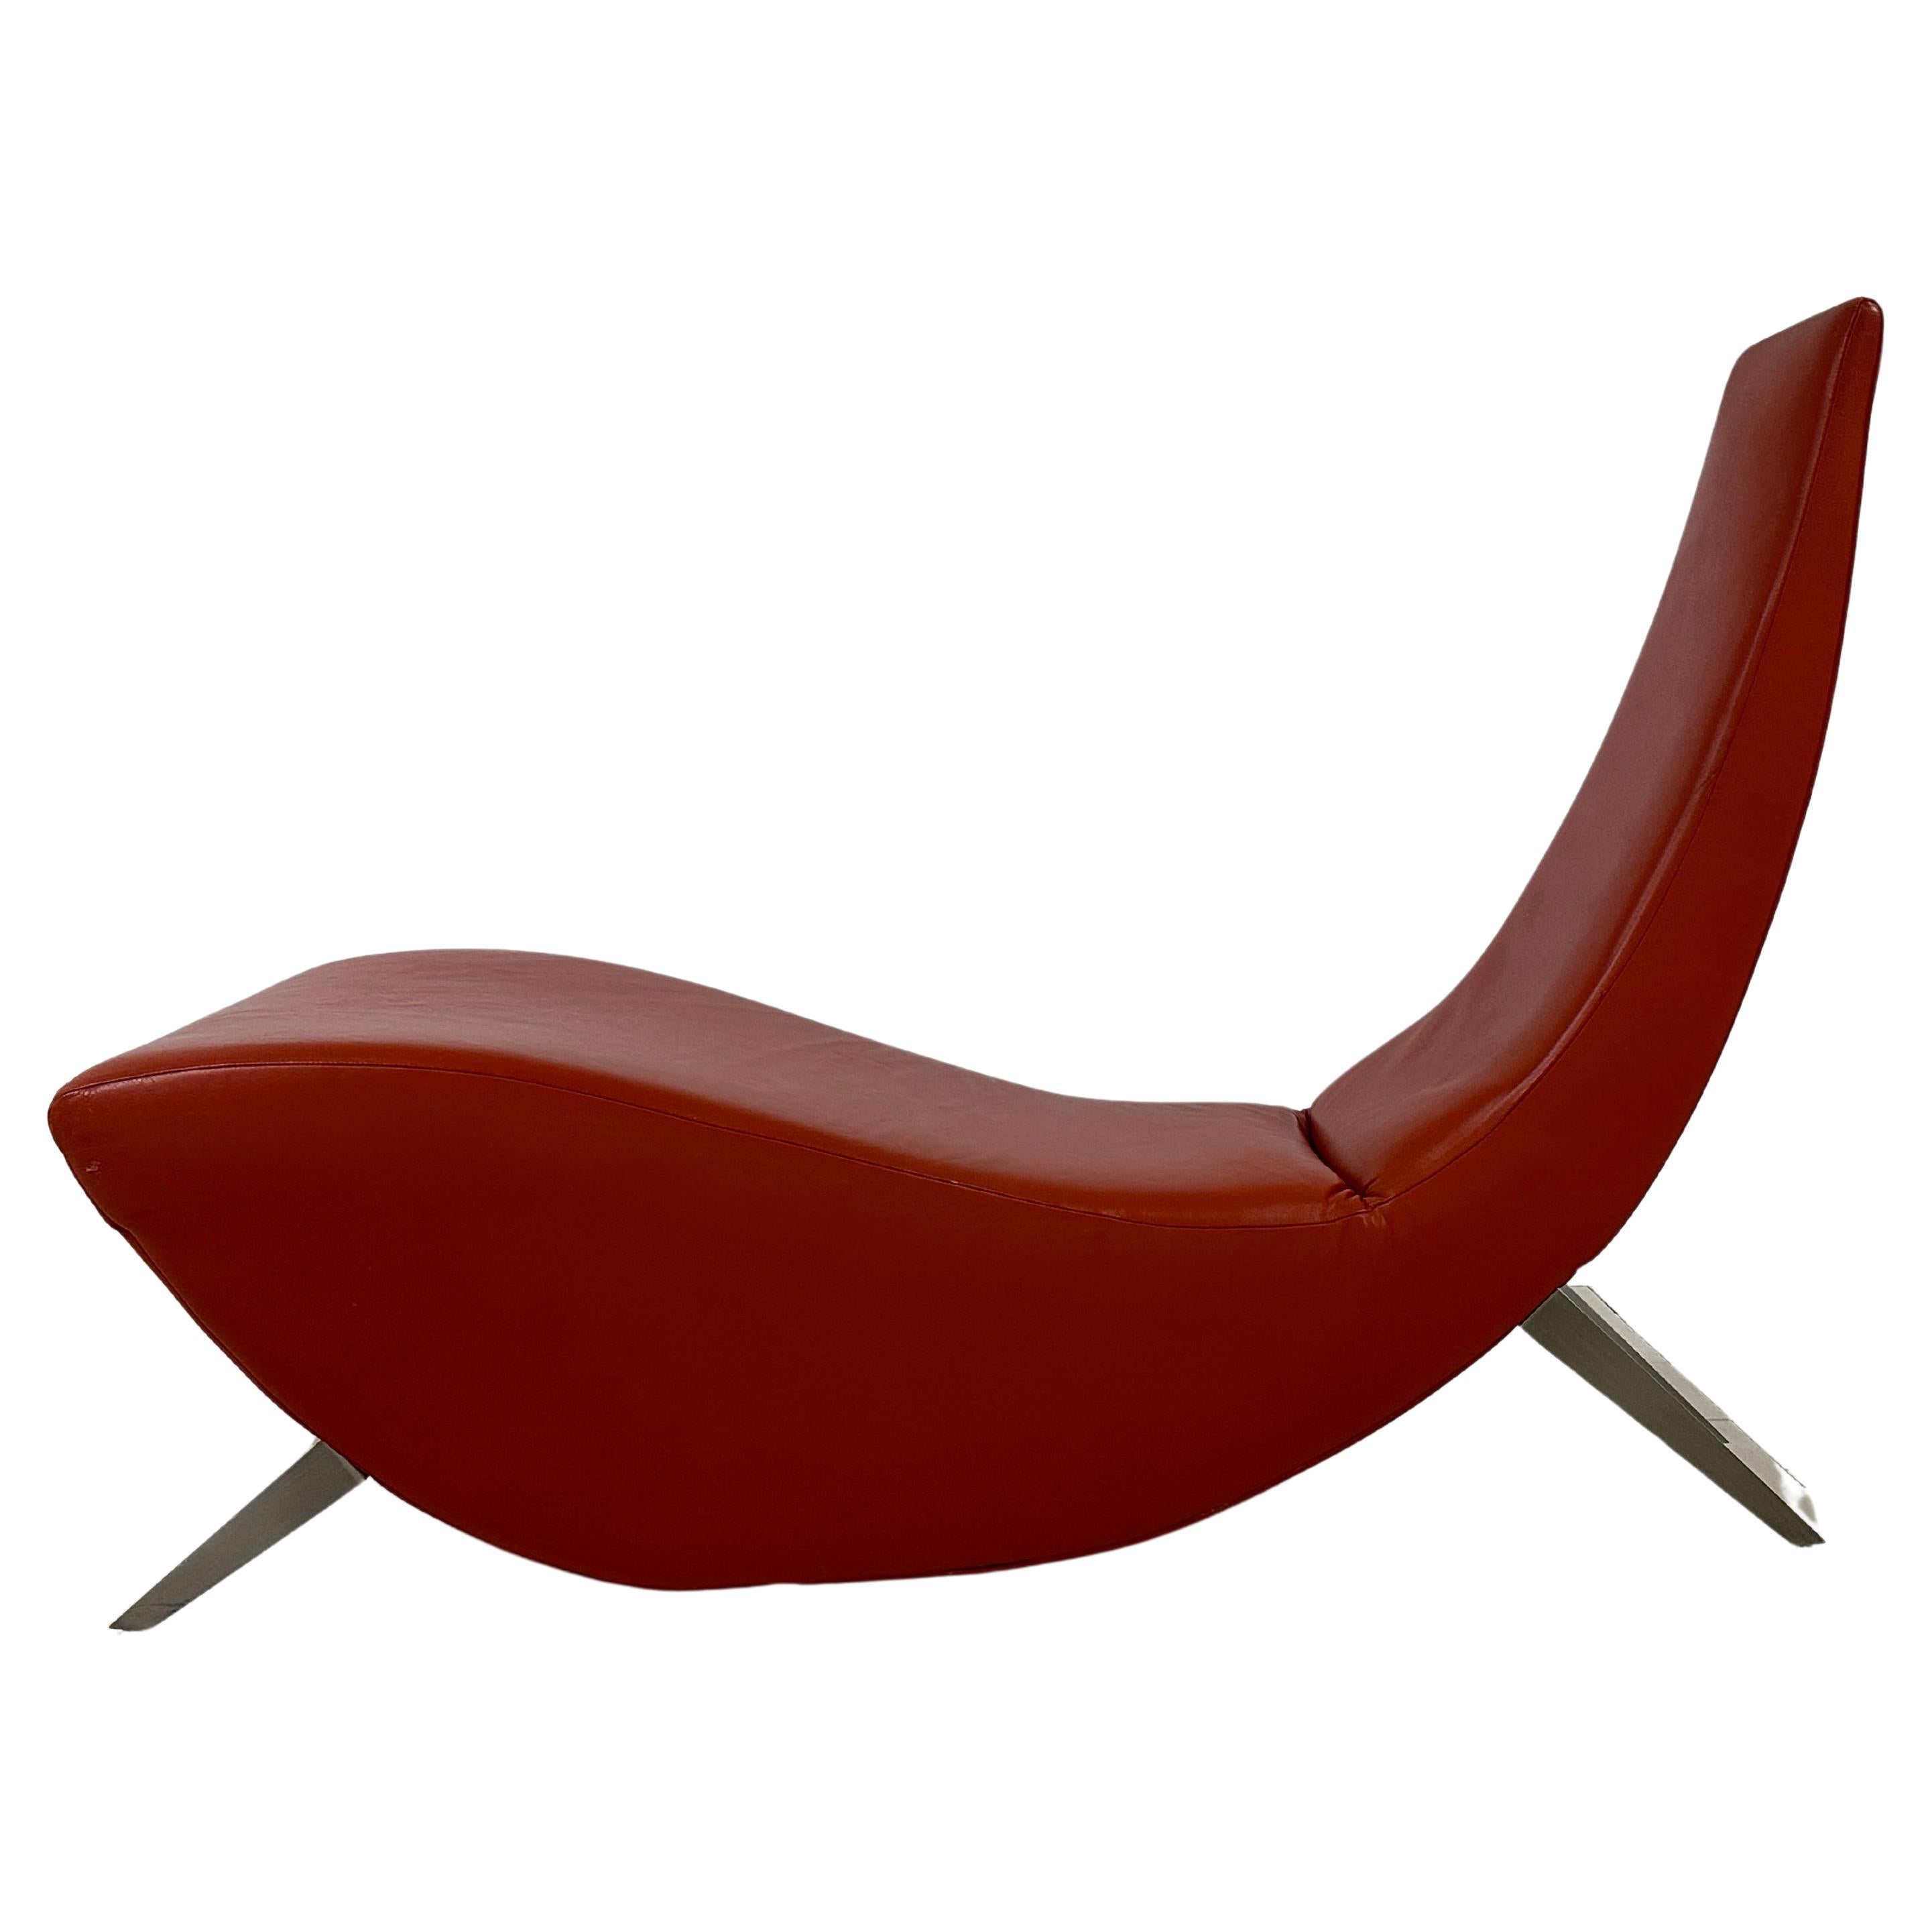 Cette chaise est dotée d'un cuir vermillon de première qualité et de 4 pieds en acier brossé.
Il a été réalisé par Stanley Jay Freidman  pour Brueton. 
Ses lignes sculpturales et épurées ainsi que la qualité du cuir témoignent du souci du détail et